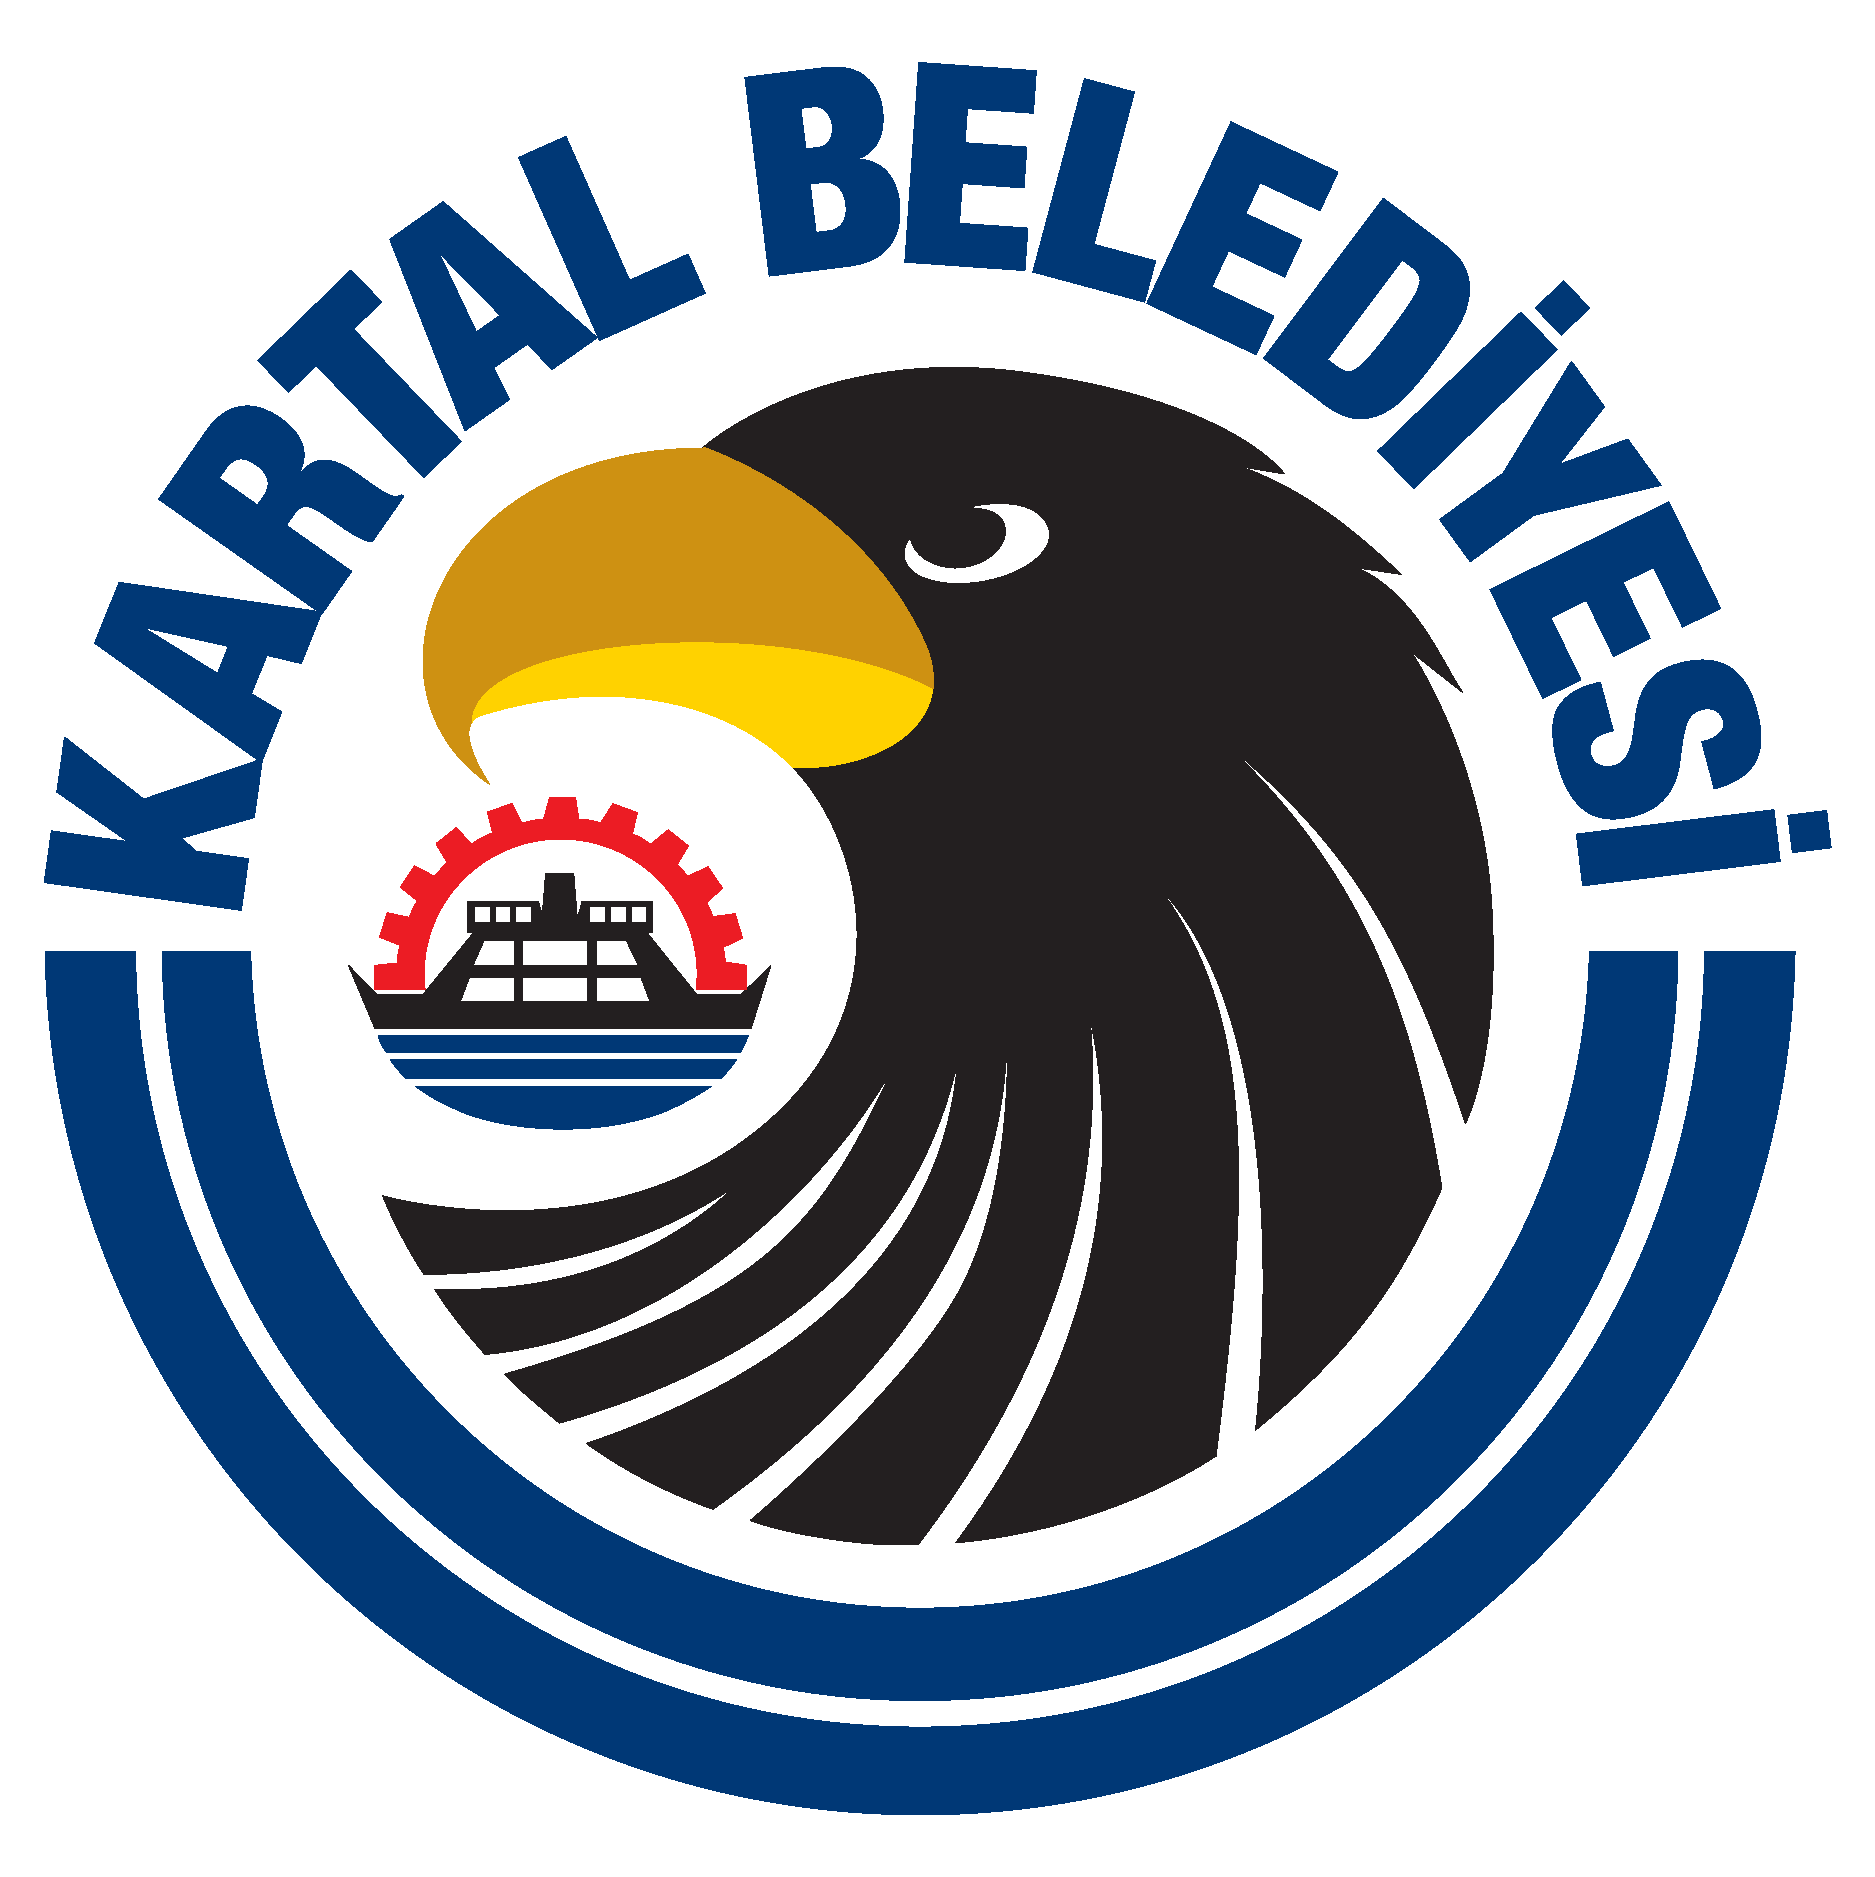 Kartal Belediyesi İStanbul Logo Vector